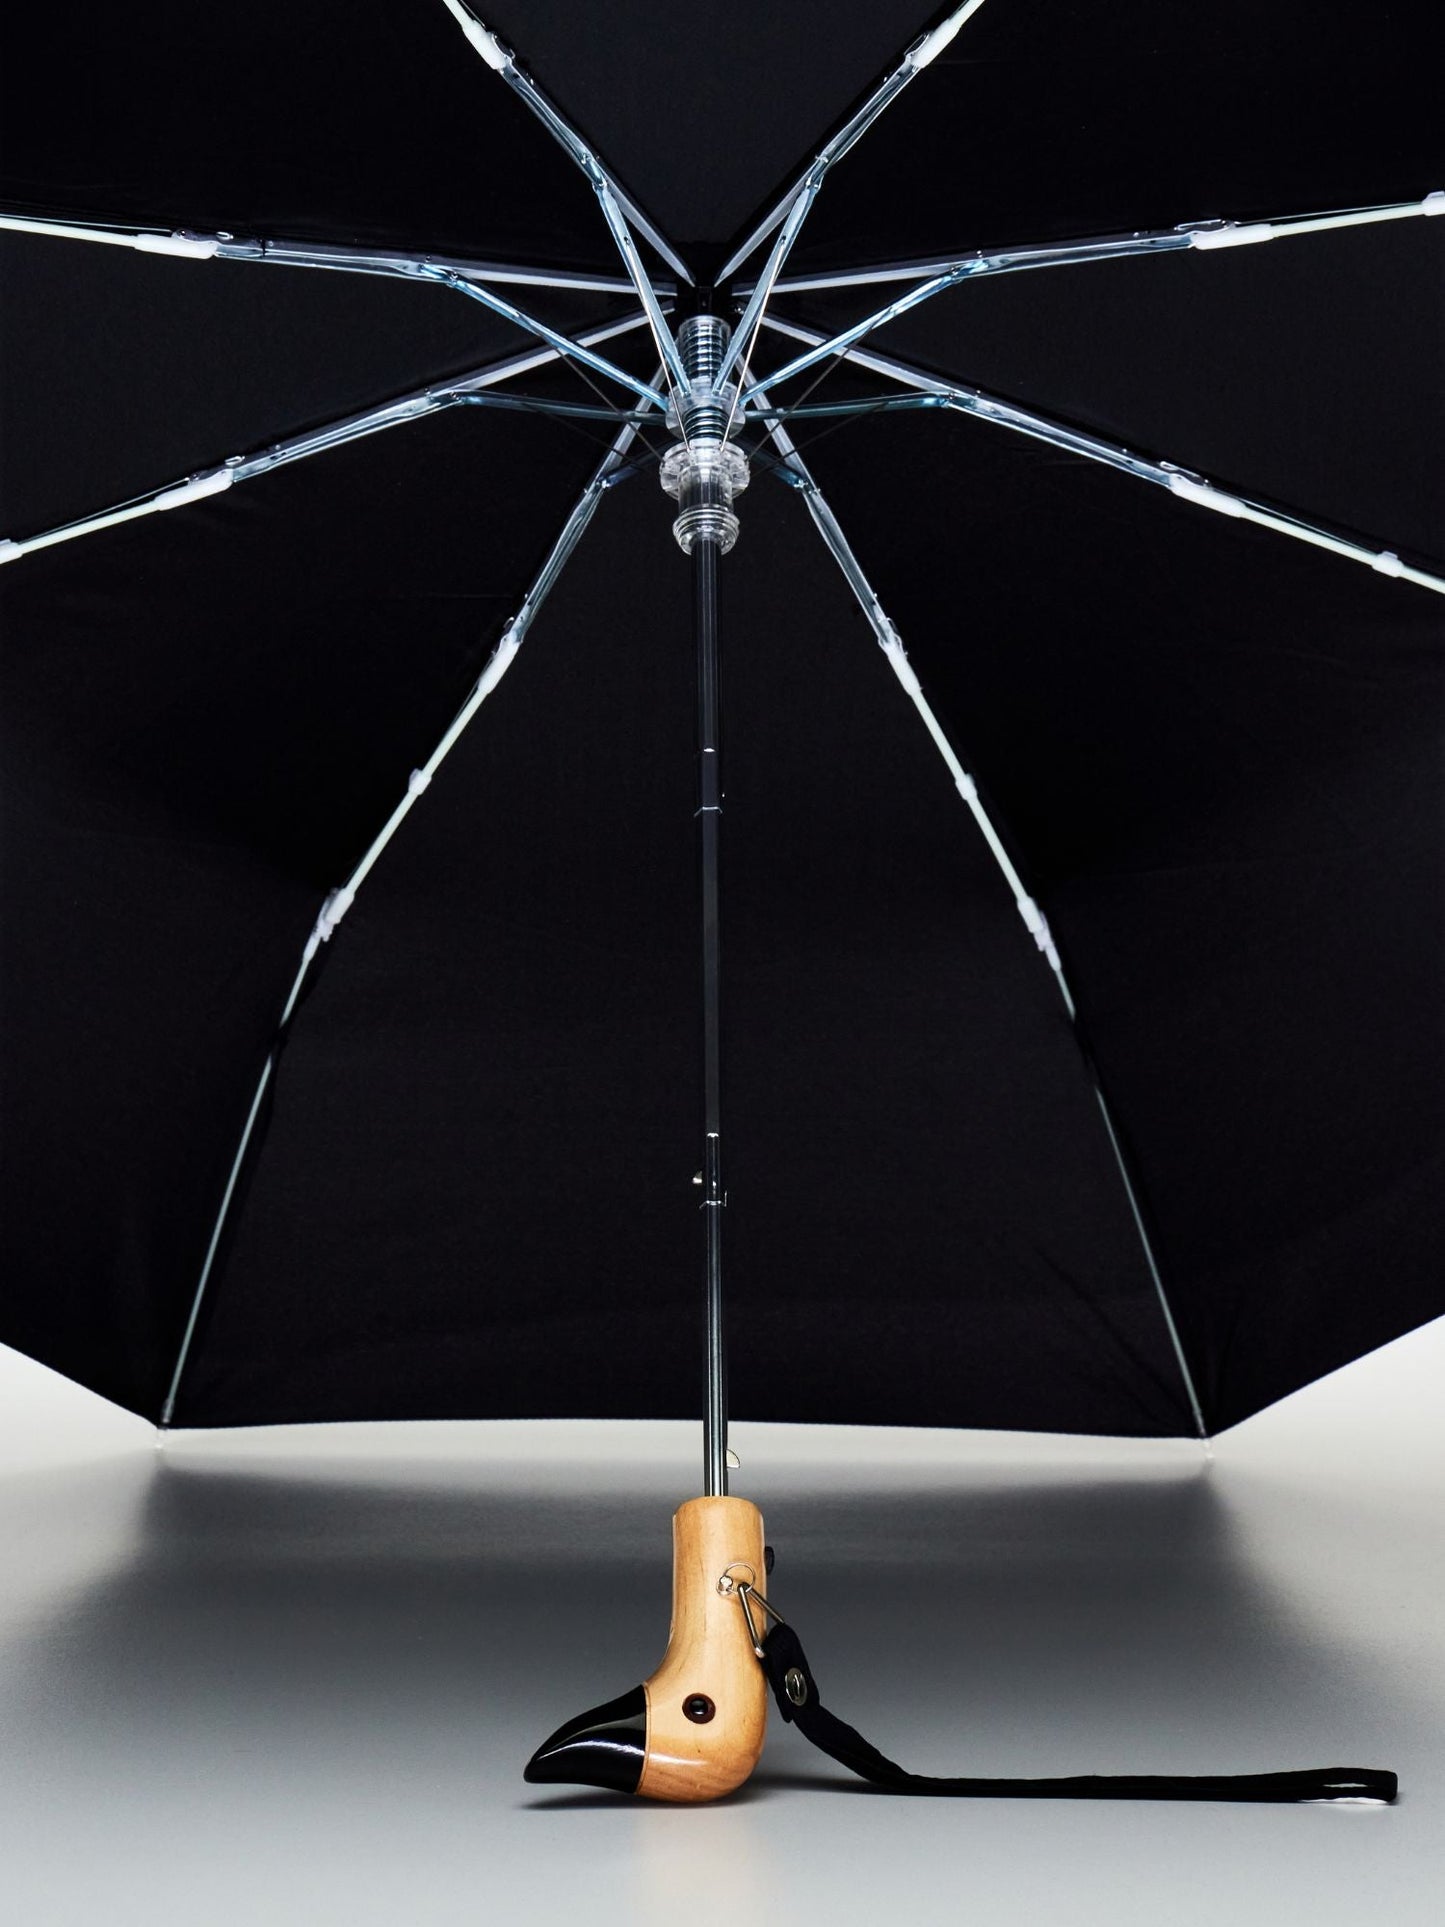 
                  
                    Schwarzer, kompakter, umweltfreundlicher und windfester Regenschirm
                  
                